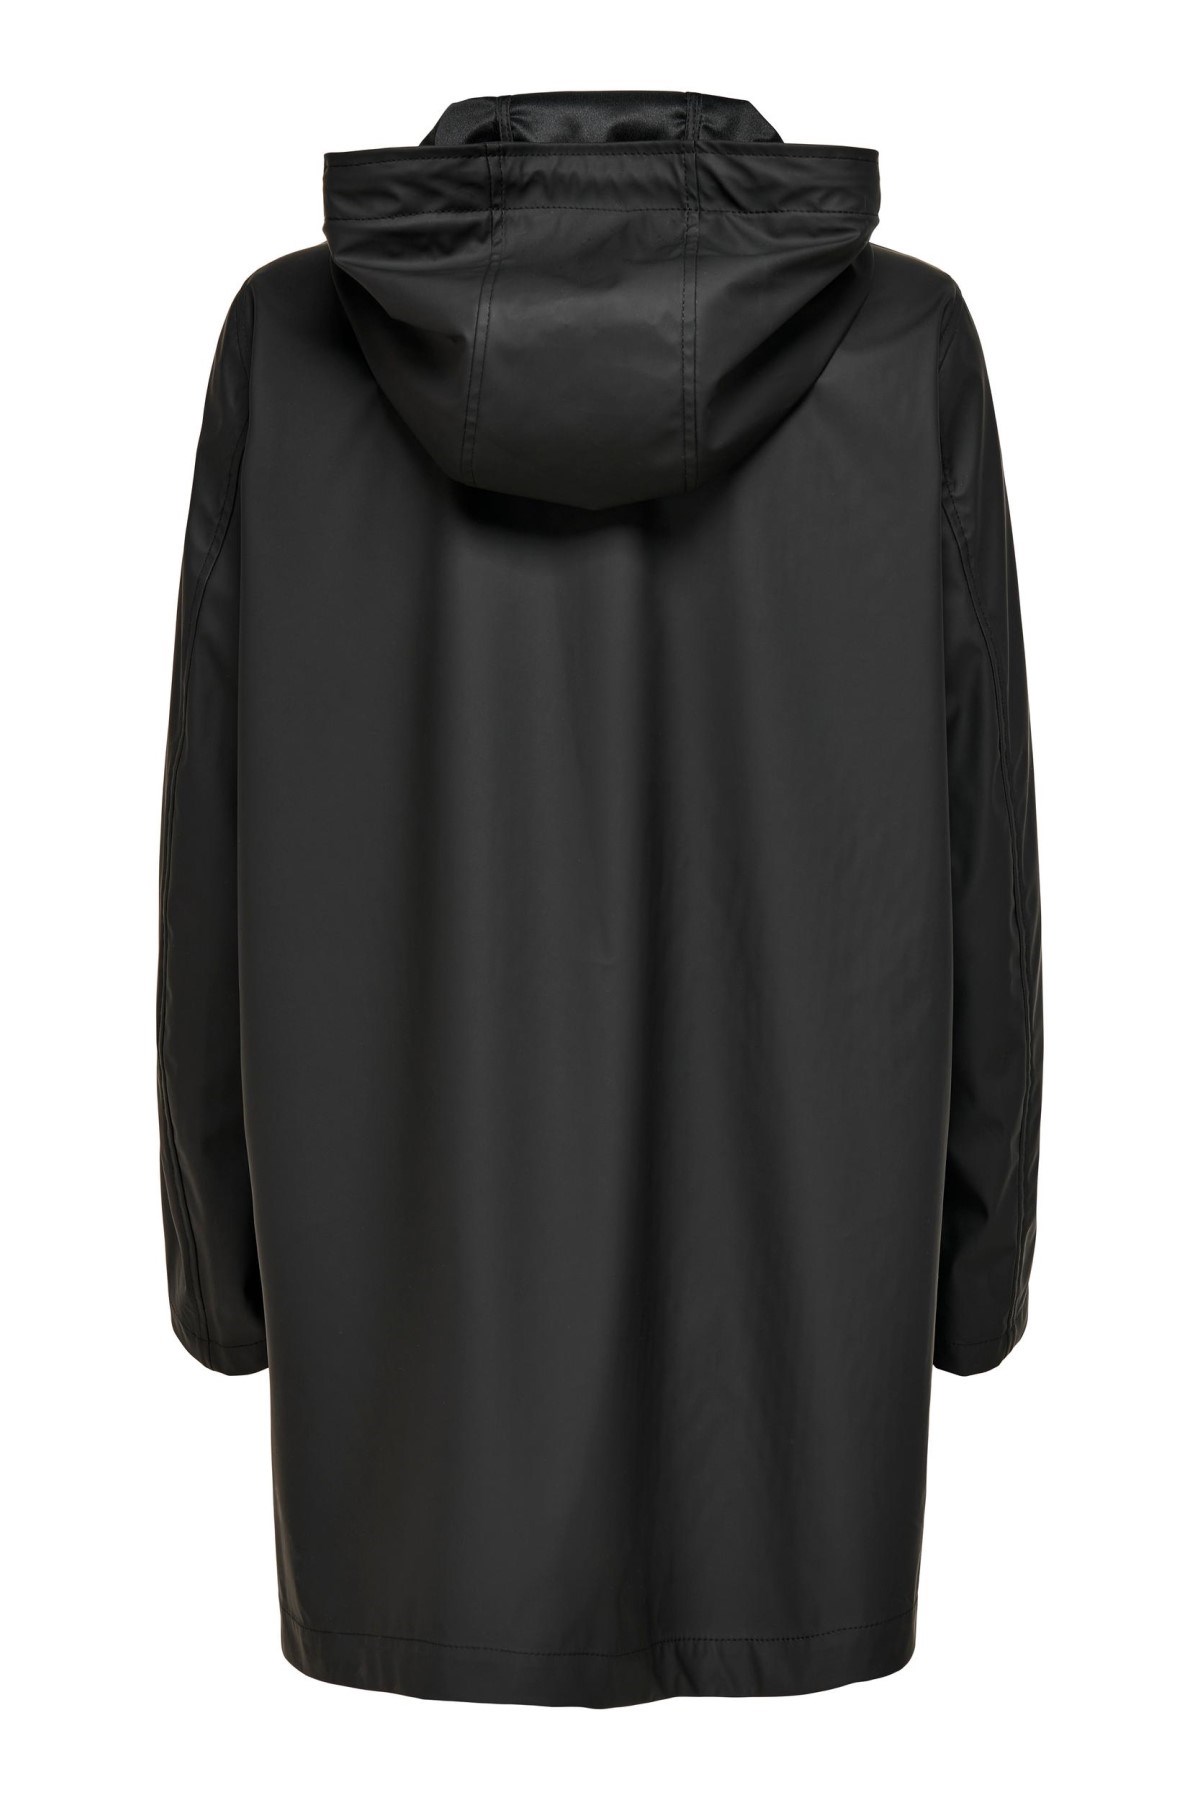 Only Kadın Ceket 15234052 Black